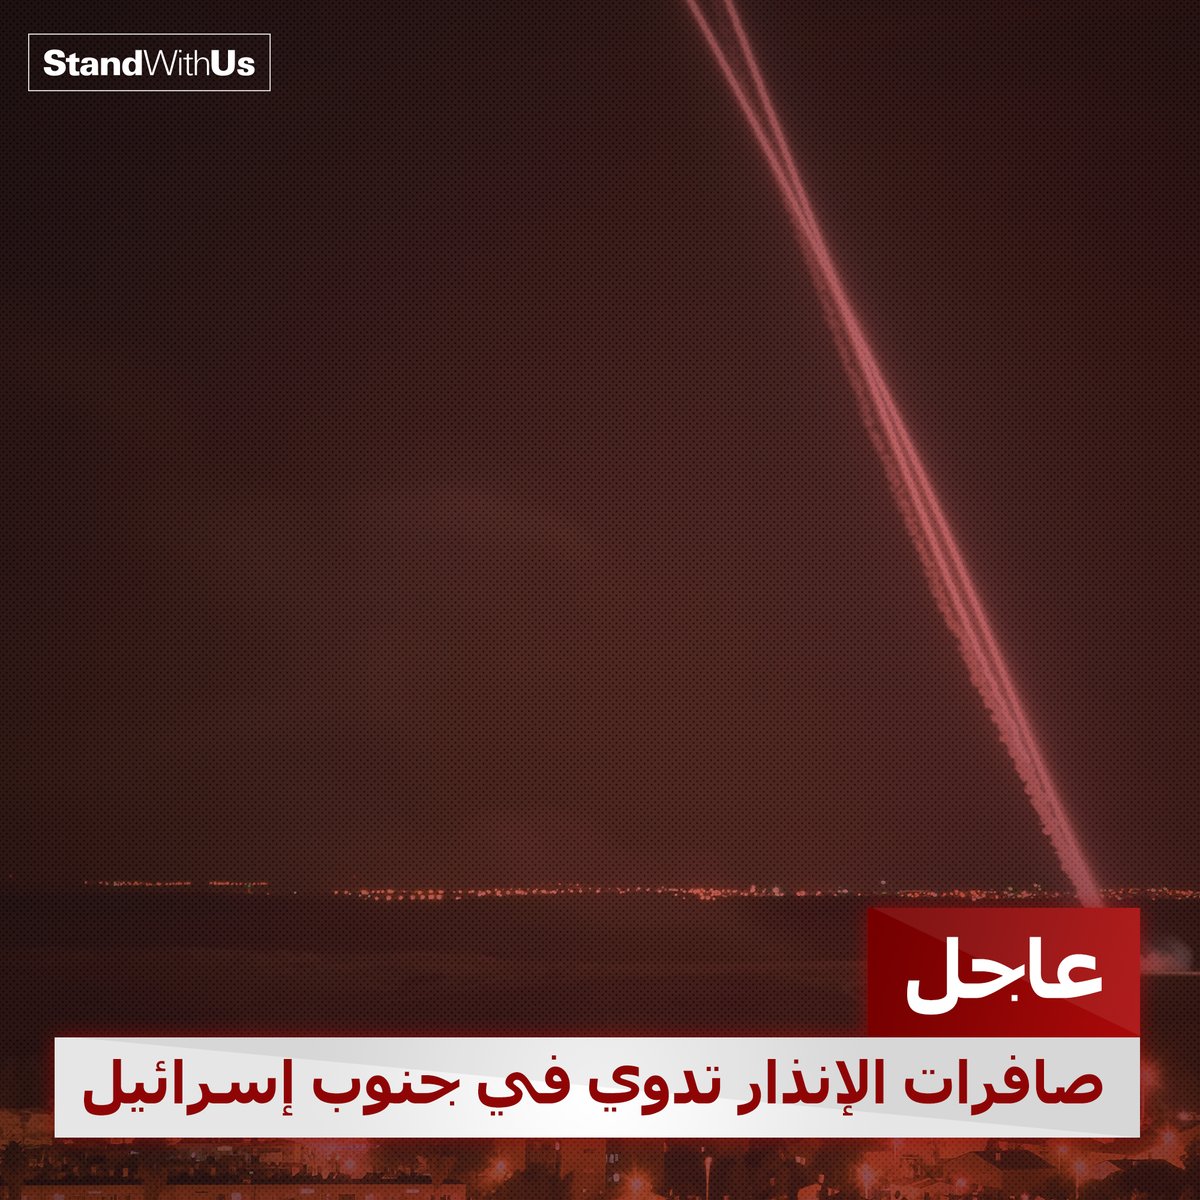 عاجل: إطلاق وابل من الصواريخ الإرهابية من قطاع غزة على جنوب إسرائيل. ...